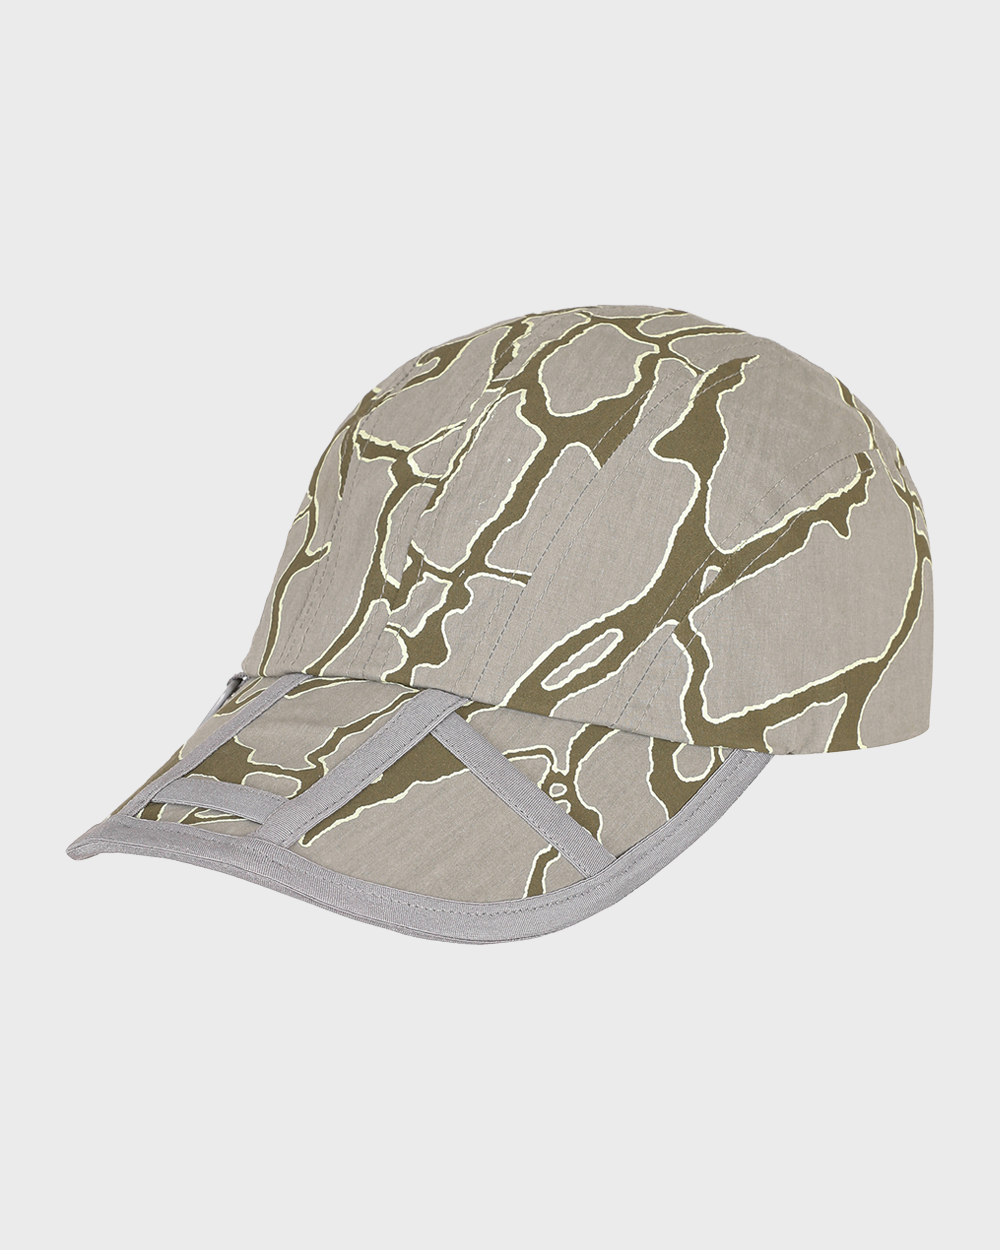 SOHC Patterned Cap (Khaki)